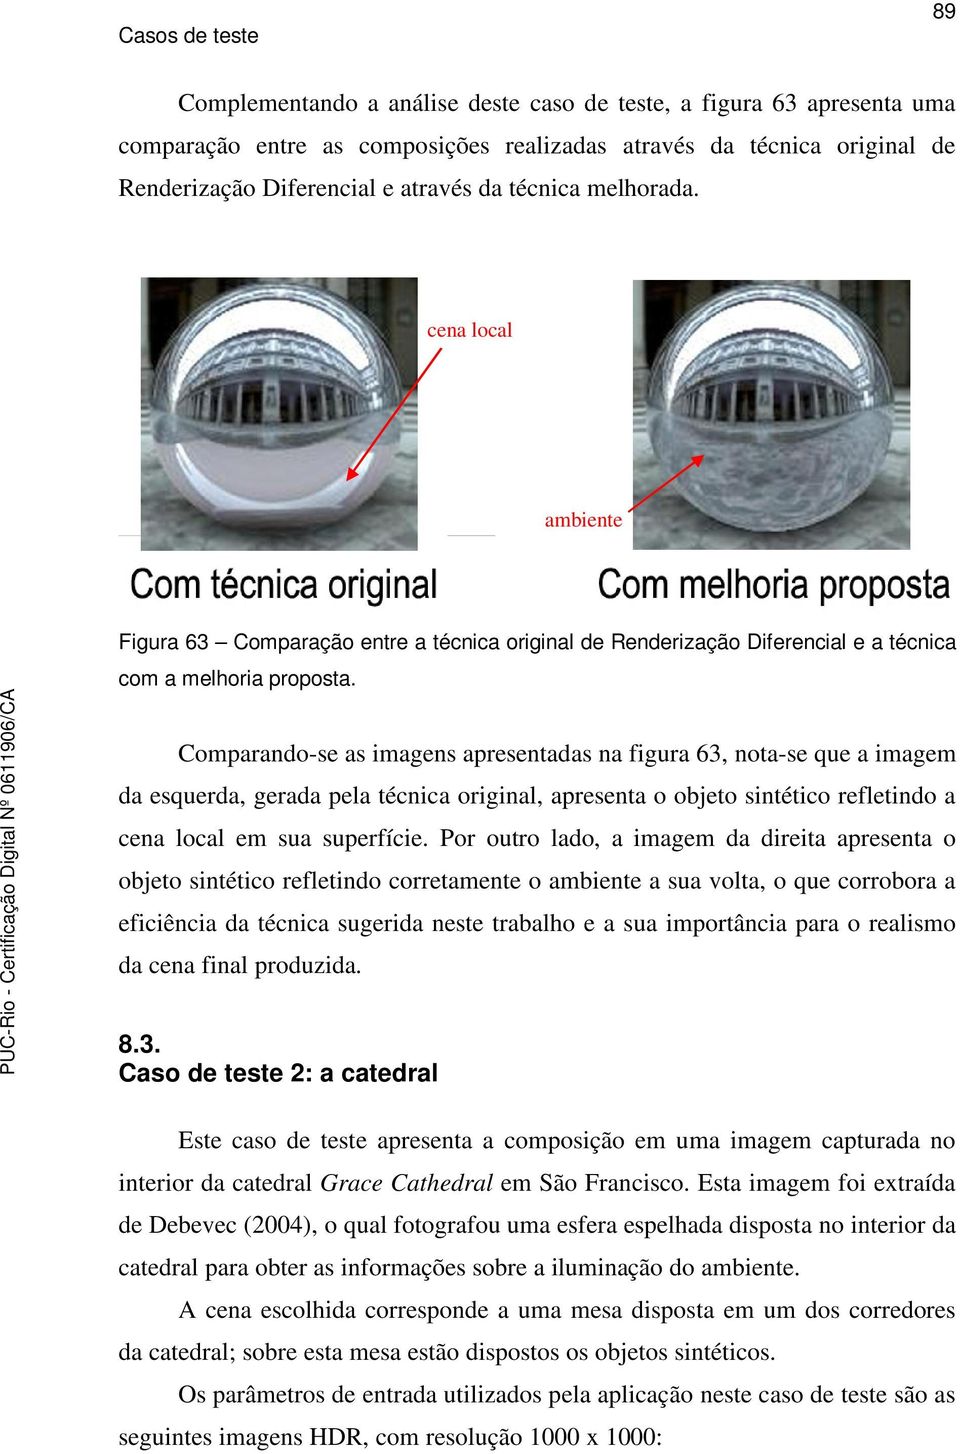 Comparando-se as imagens apresentadas na figura 63, nota-se que a imagem da esquerda, gerada pela técnica original, apresenta o objeto sintético refletindo a cena local em sua superfície.